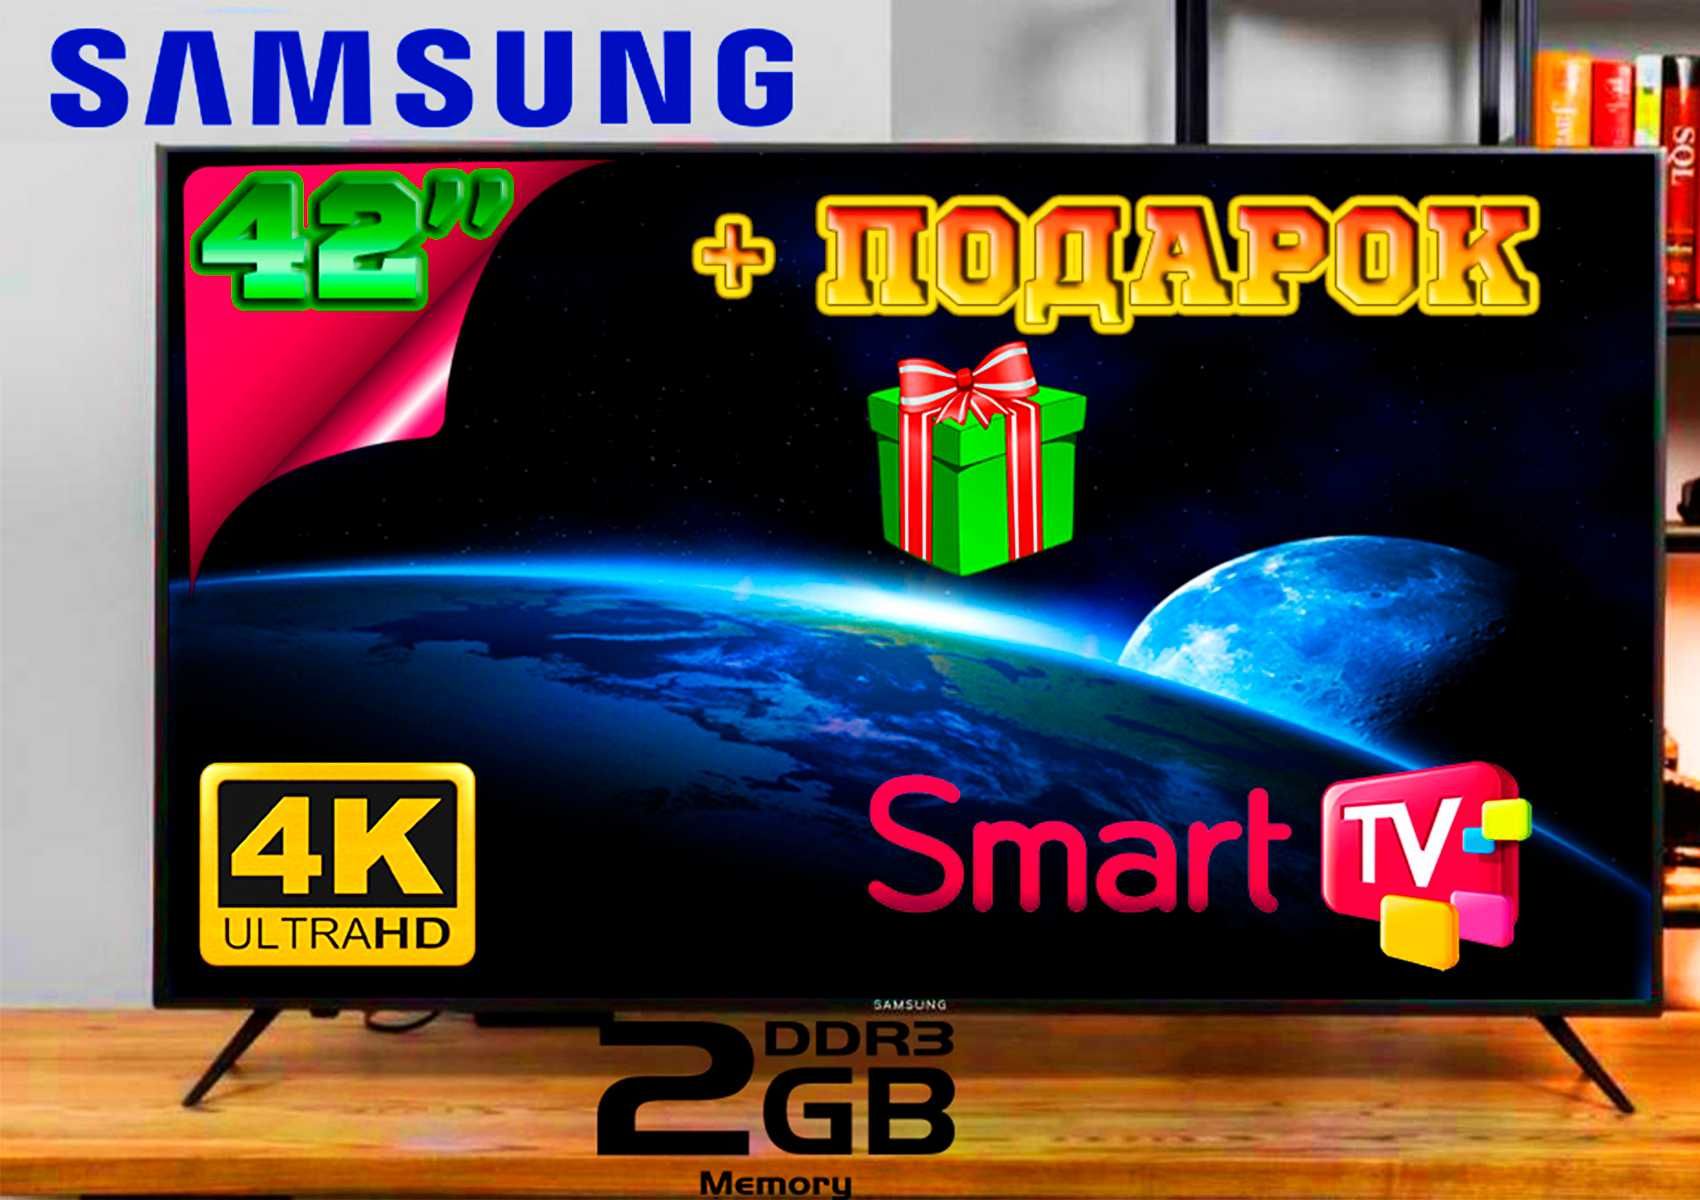 Хит продаж! Новый телевизор Samsung 42” 4K стекло Smart TV+T2+ПОДАРОК